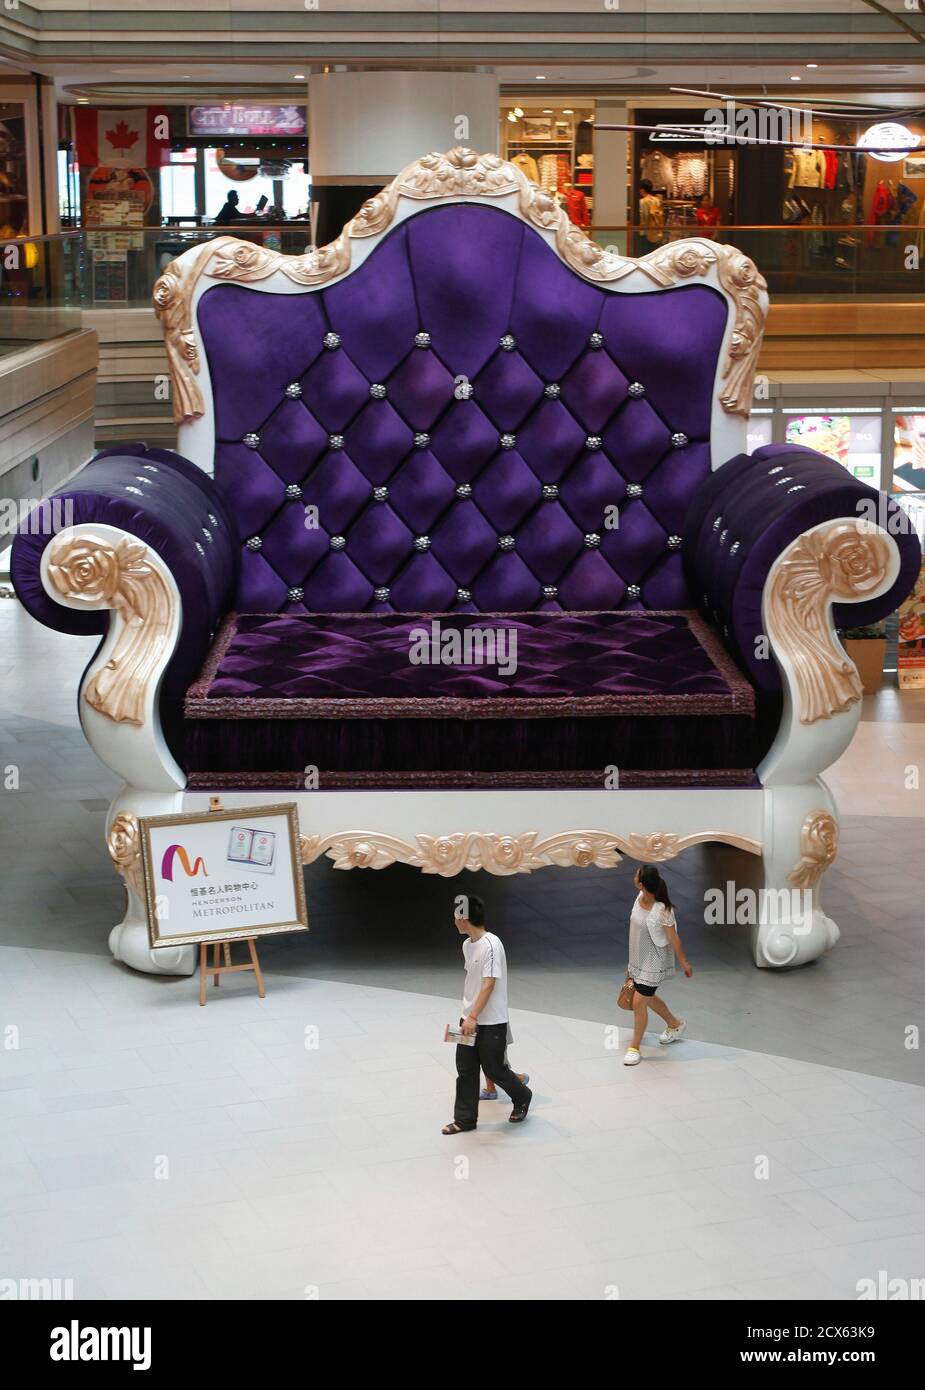 Les gens passent devant un canapé-chaise de 6.8 mètres de hauteur (22 pieds  de hauteur) et de 7.7 mètres de largeur (25 pieds de largeur) dans un  centre commercial de Shanghai, le